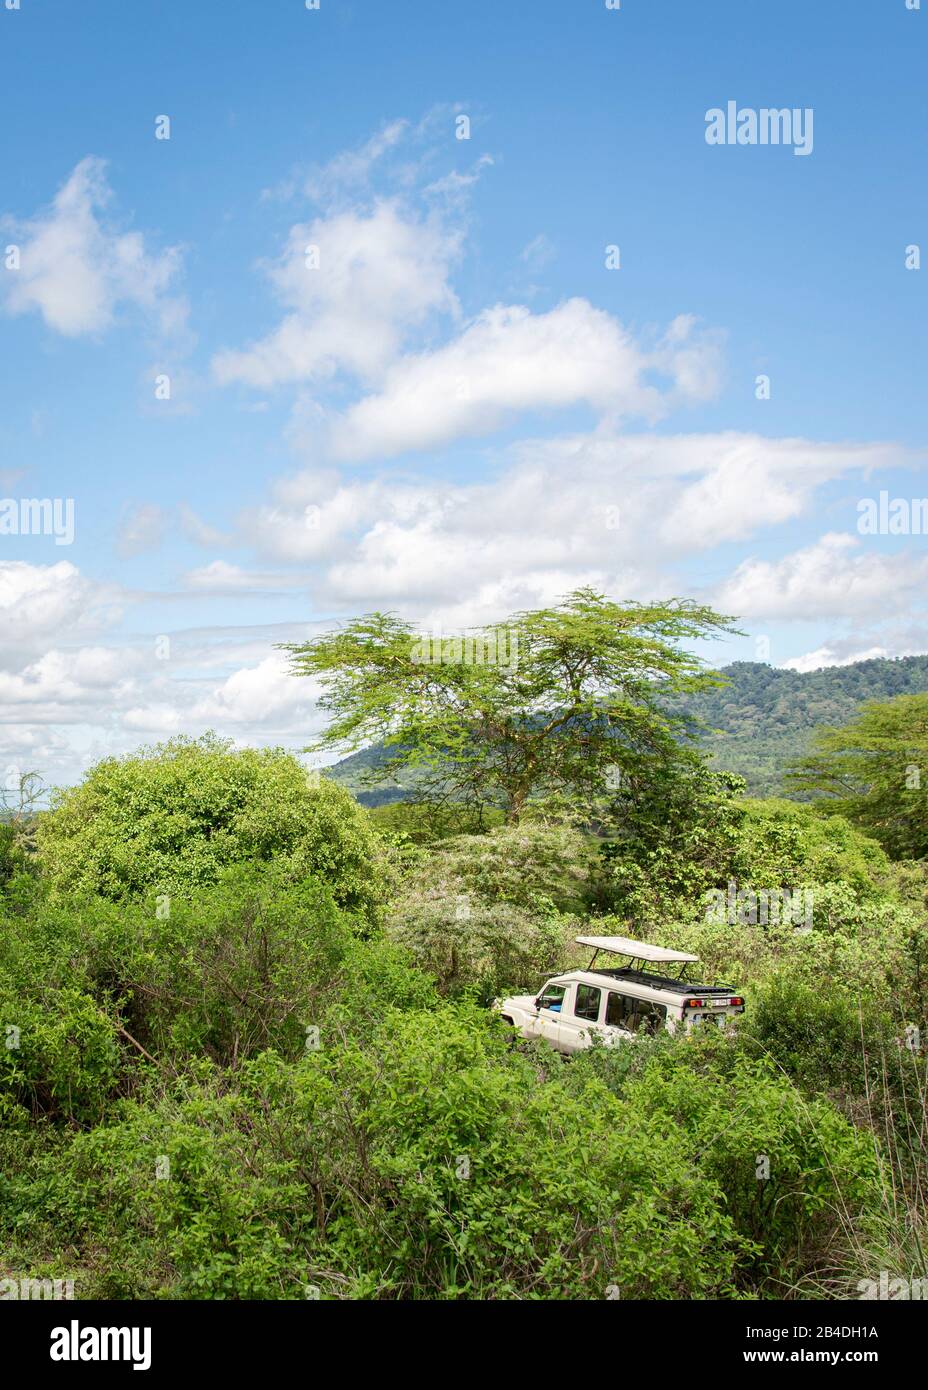 Tanzanie, Nord de la Tanzanie, Parc national du Serengeti, cratère de Ngorongoro, Tarangire, Arusha et lac Manyara, jeep sur une route poussiéreuse Banque D'Images